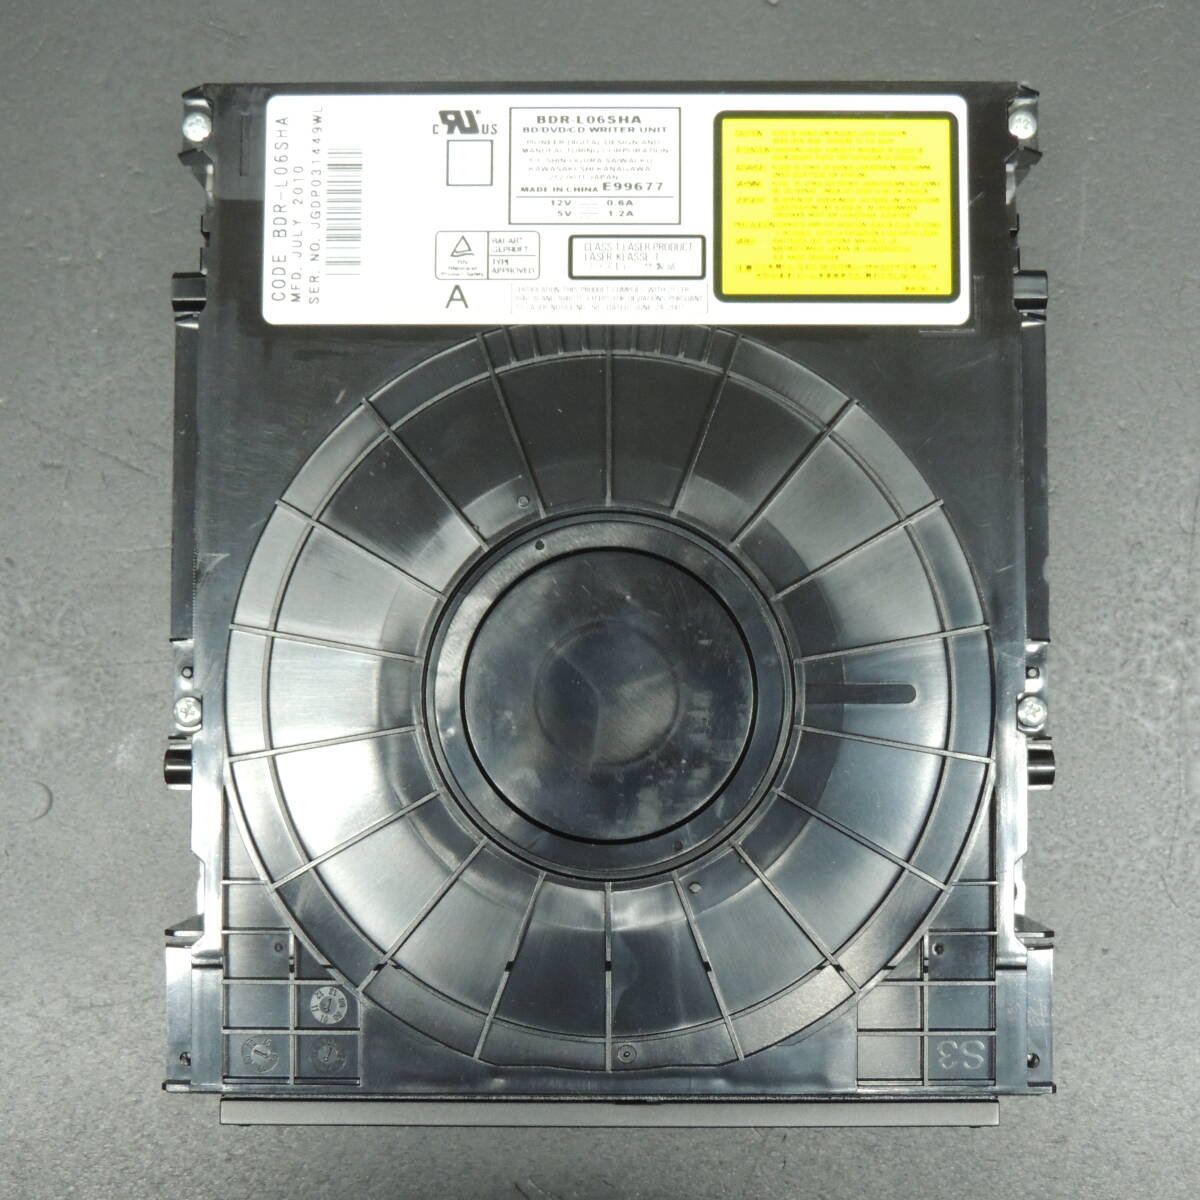 【ダビング/再生確認済み】SHARP シャープ Blu－rayドライブ BDR-L06SHA 換装用/交換用 管理:キ-12_画像1